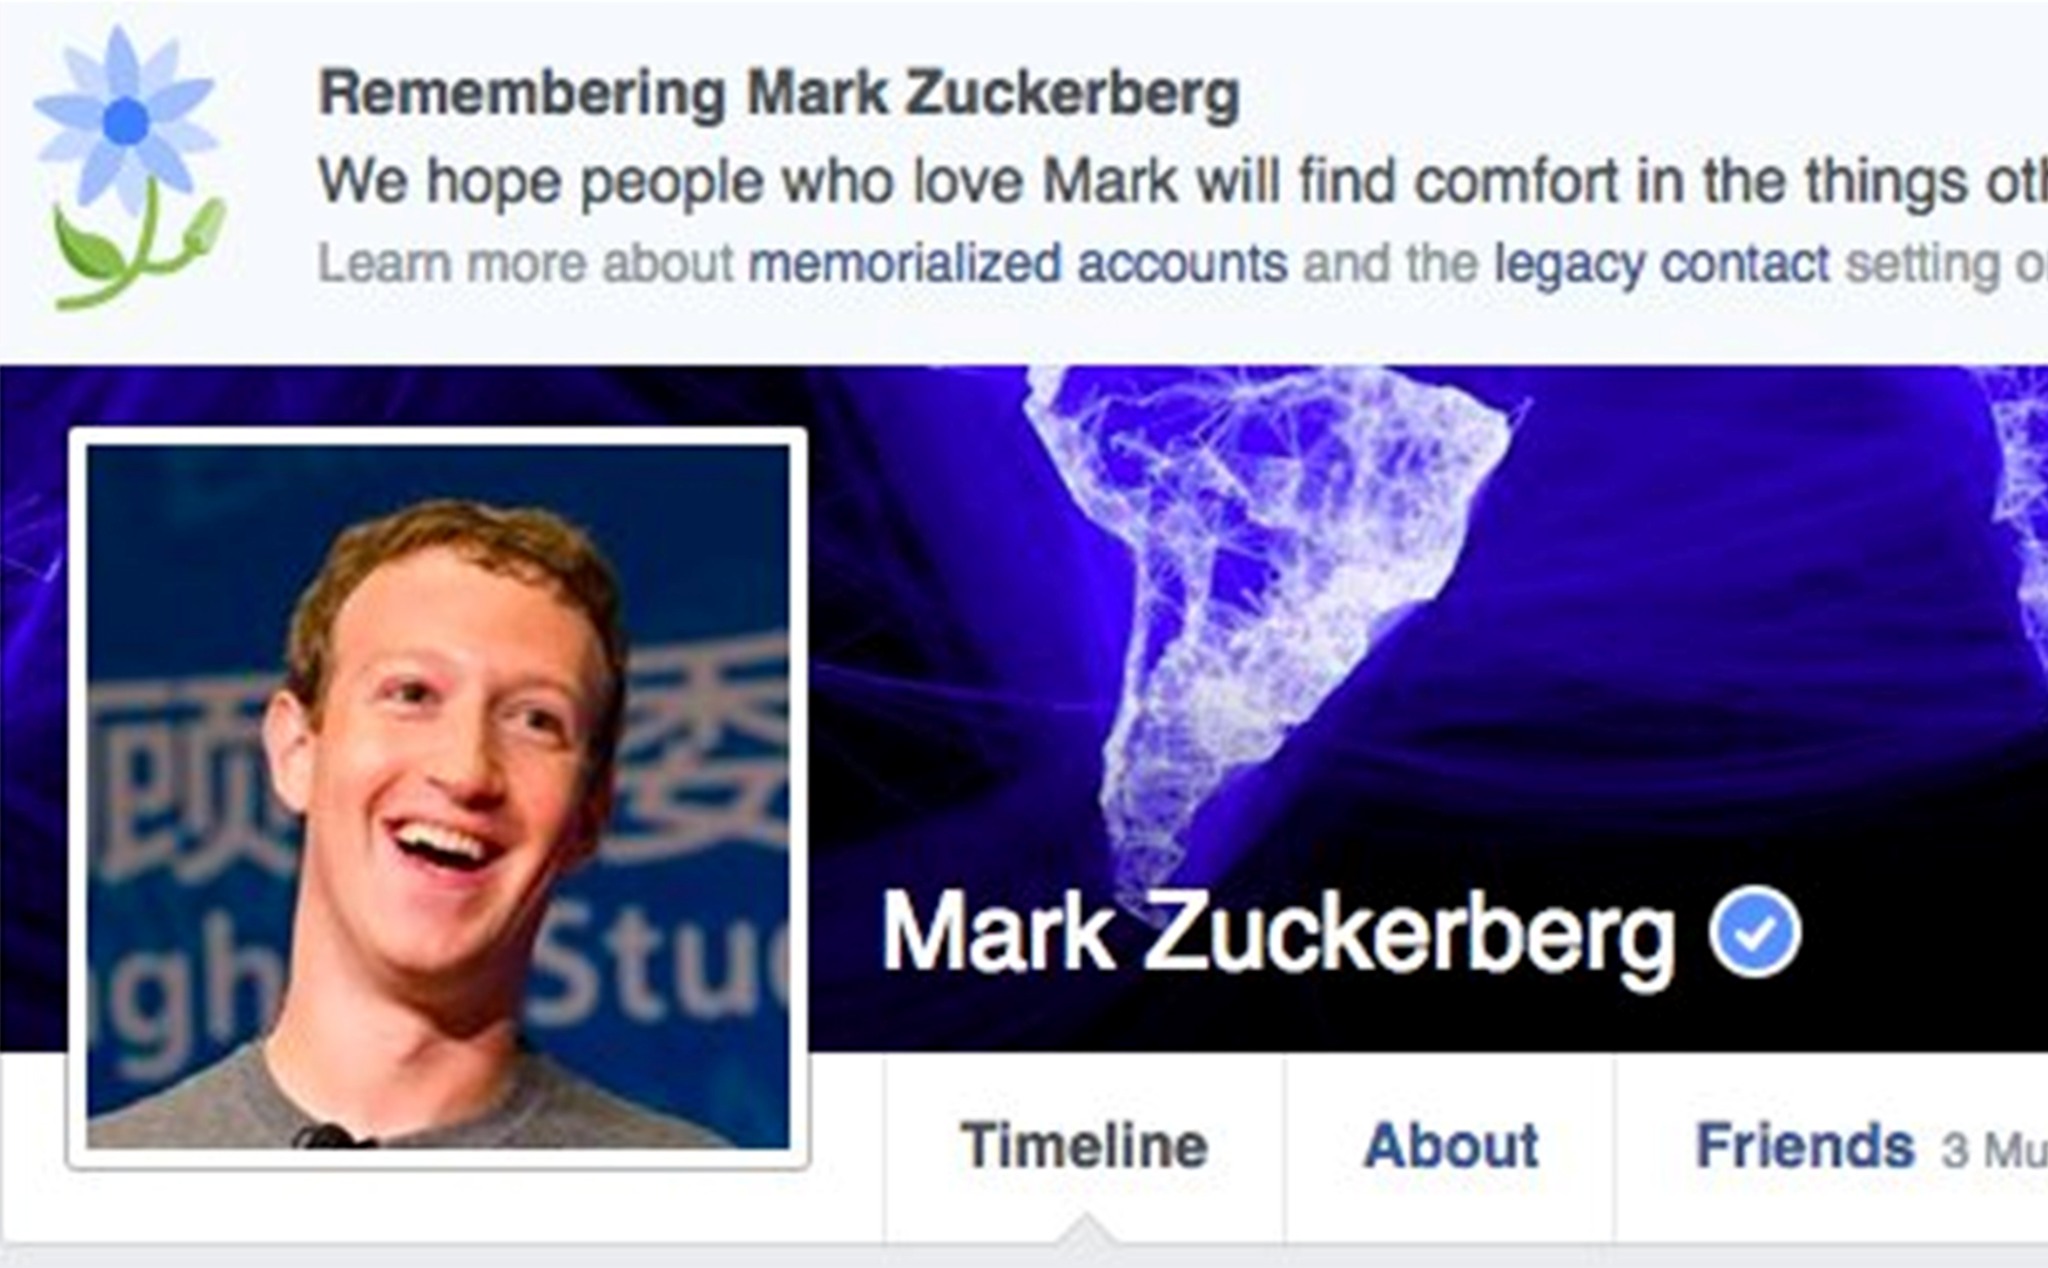 Vào năm 2100 số người dùng đã chết của Facebook sẽ đạt mức 4.9 tỷ tài khoản